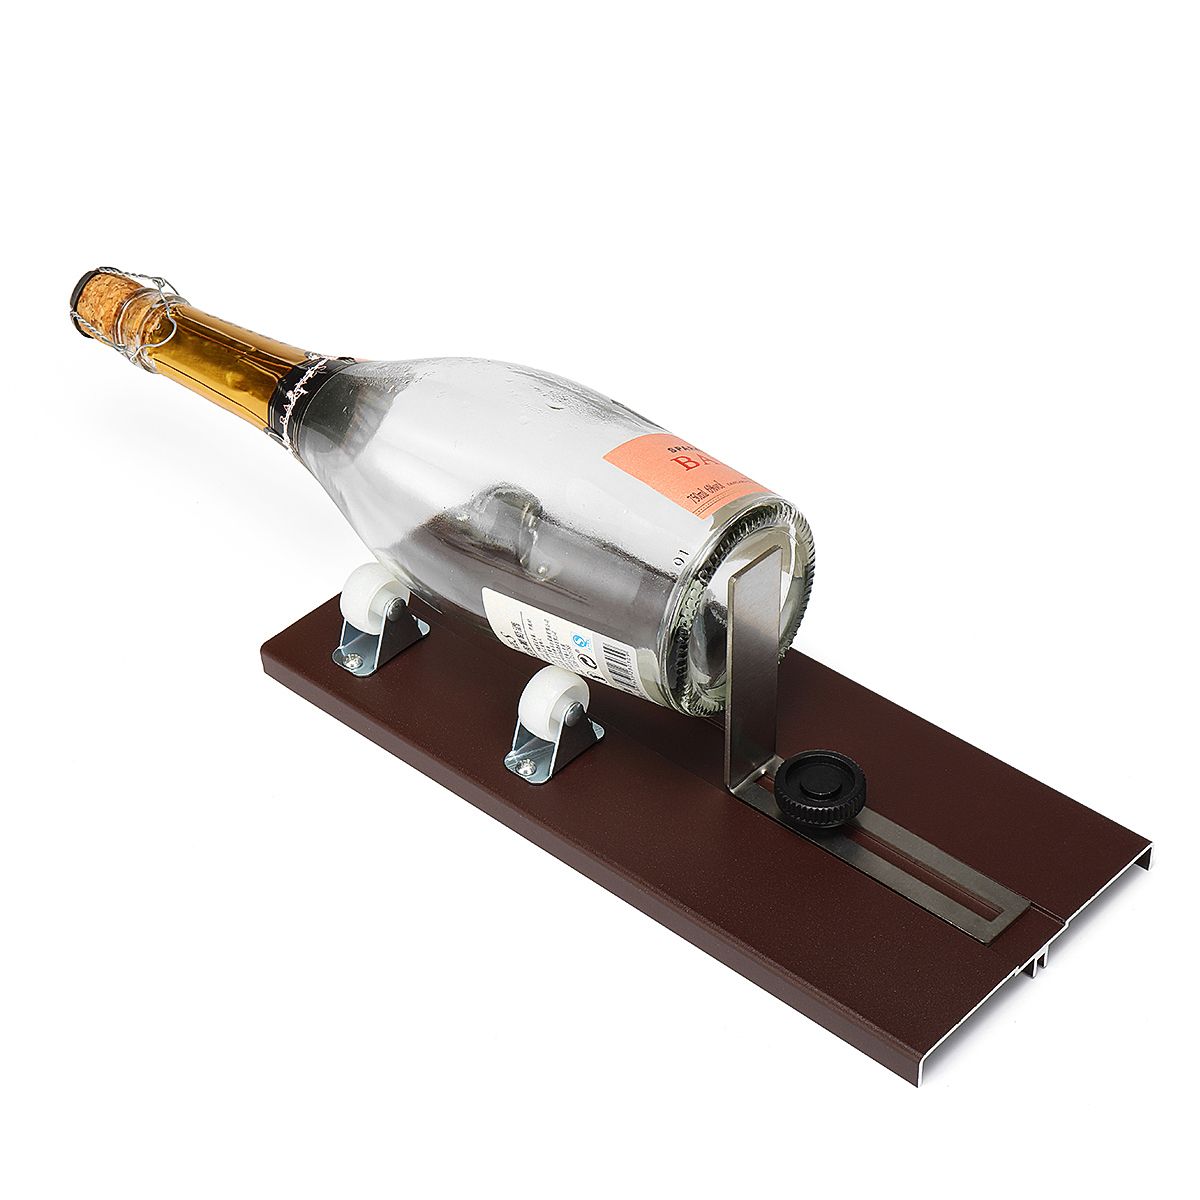 Glass-Beer-Wine-Bottle-Jar-Cutter-Scoring-Machine-DIY-Recycle-Cutting-Tool-Kit-1297124